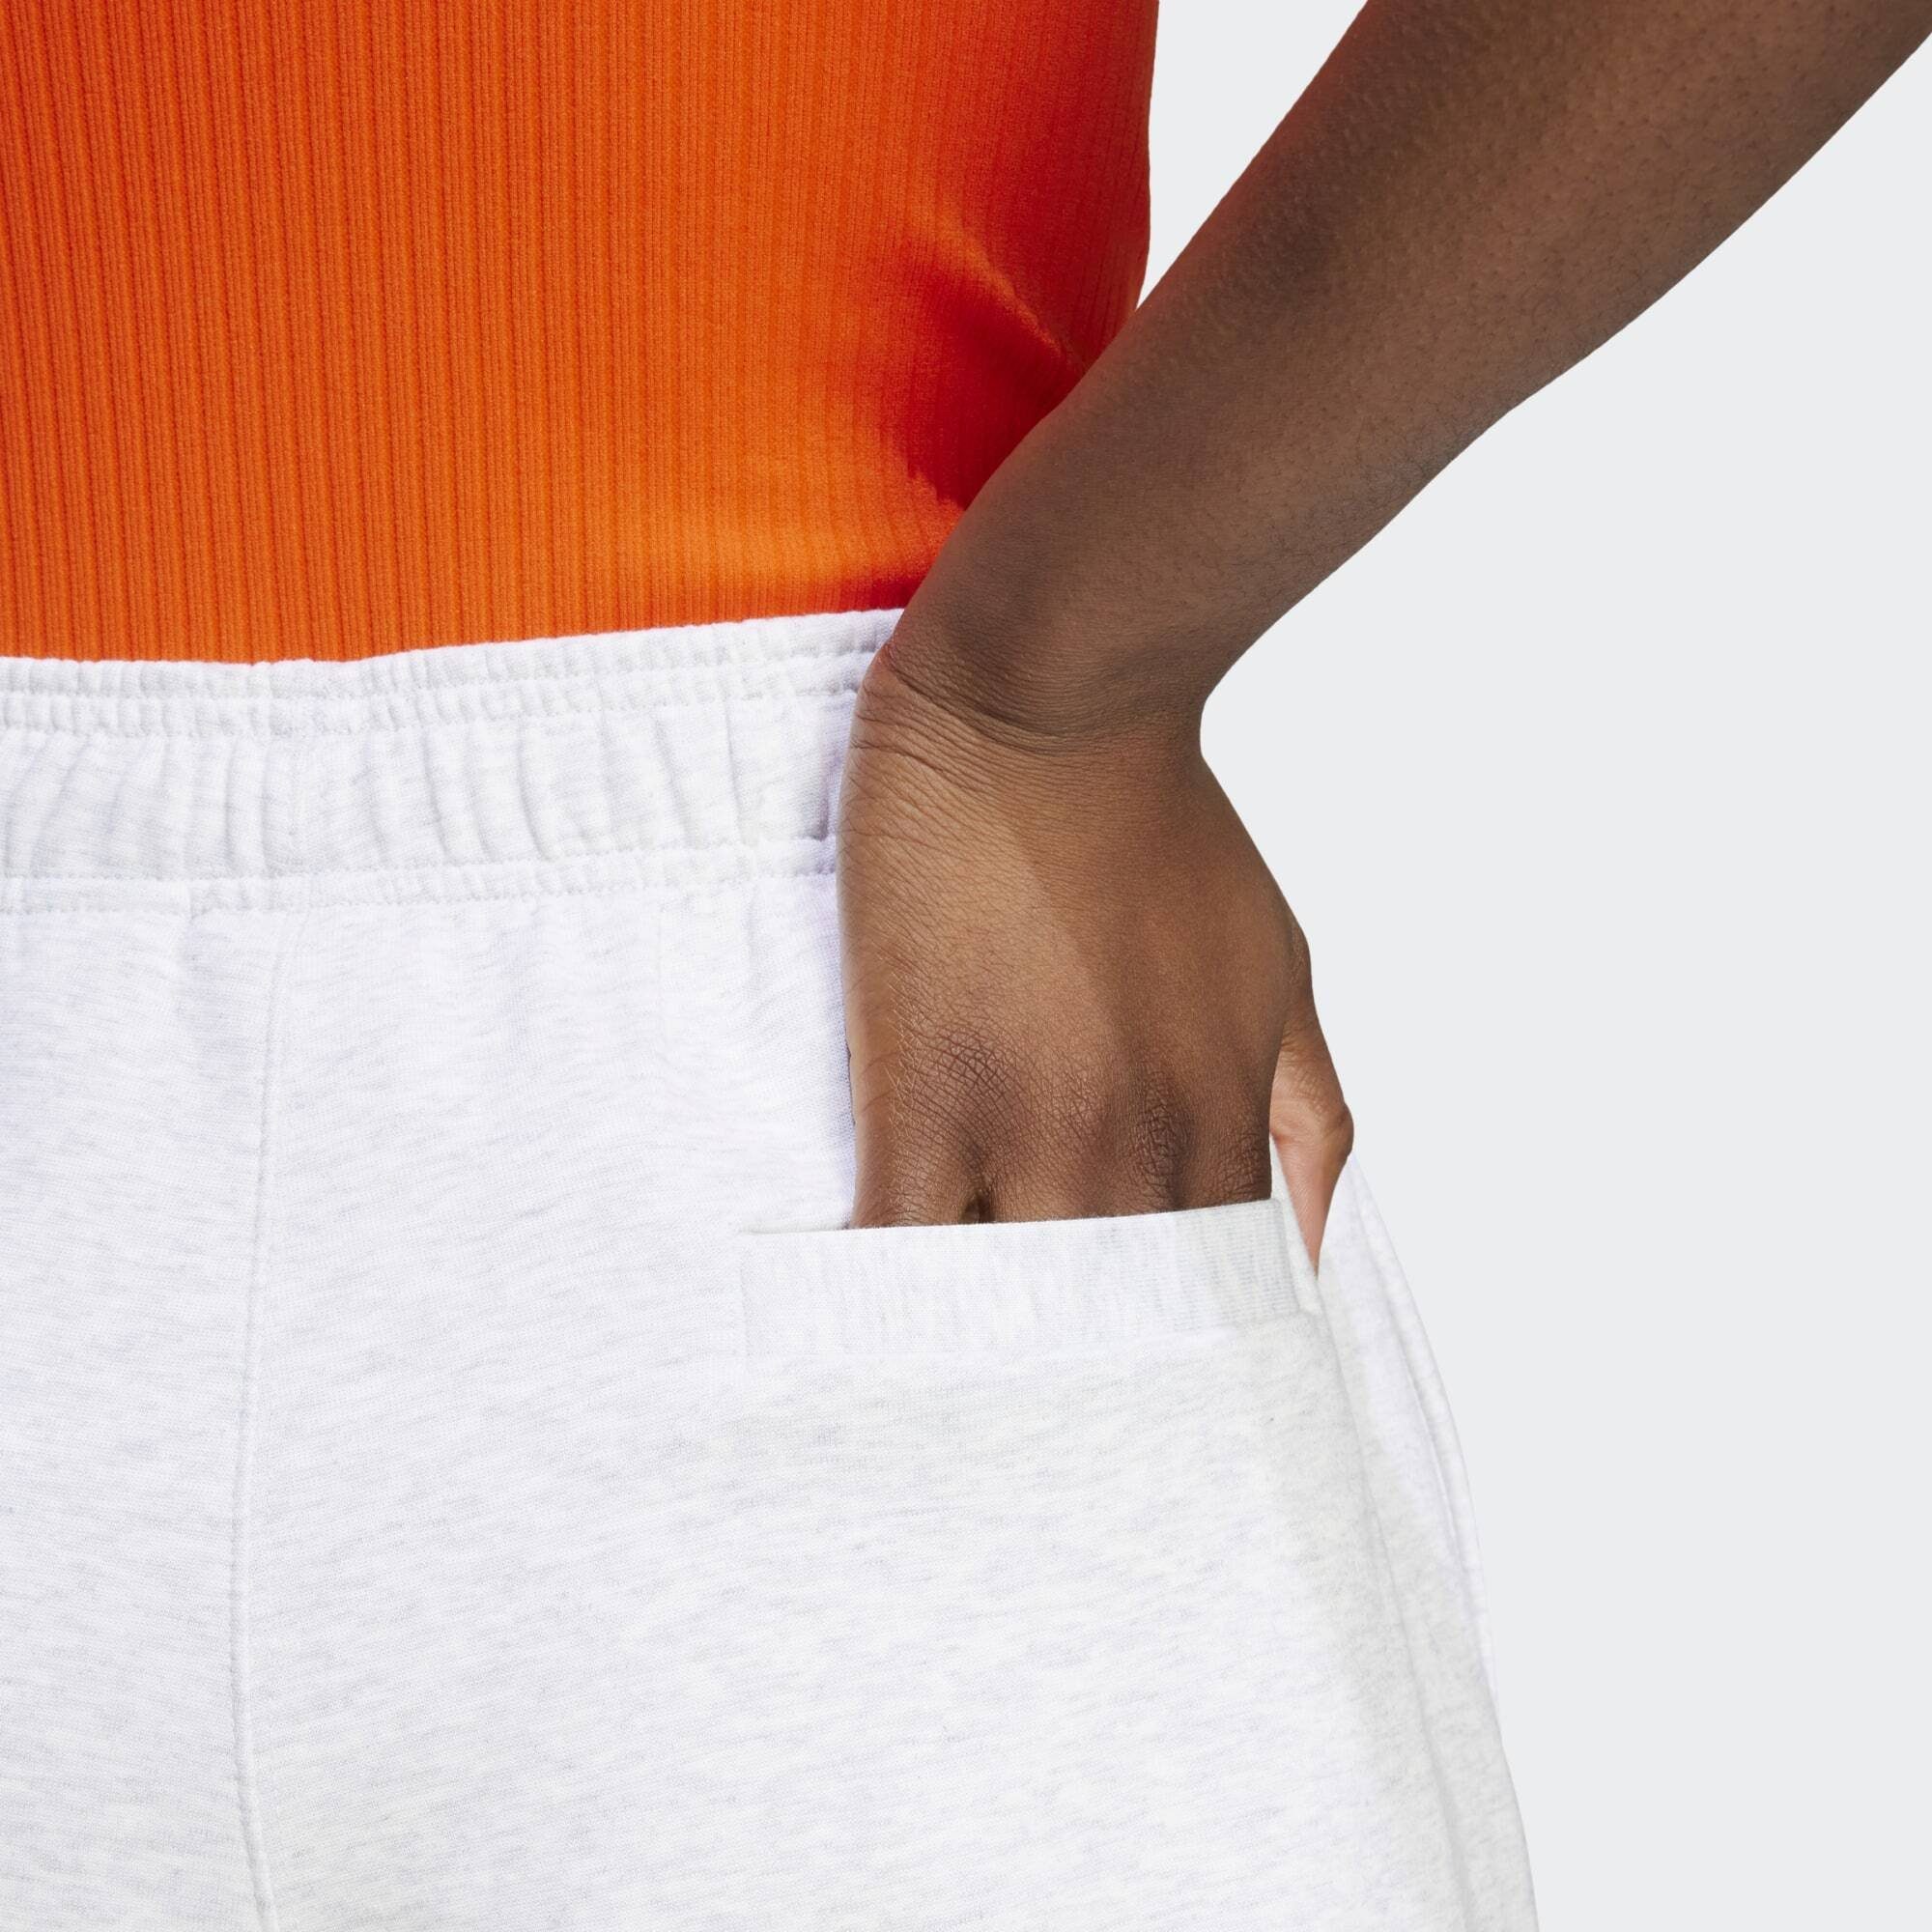 Shorts Originals adidas SHORTS LOOSE ESSENTIALS PREMIUM